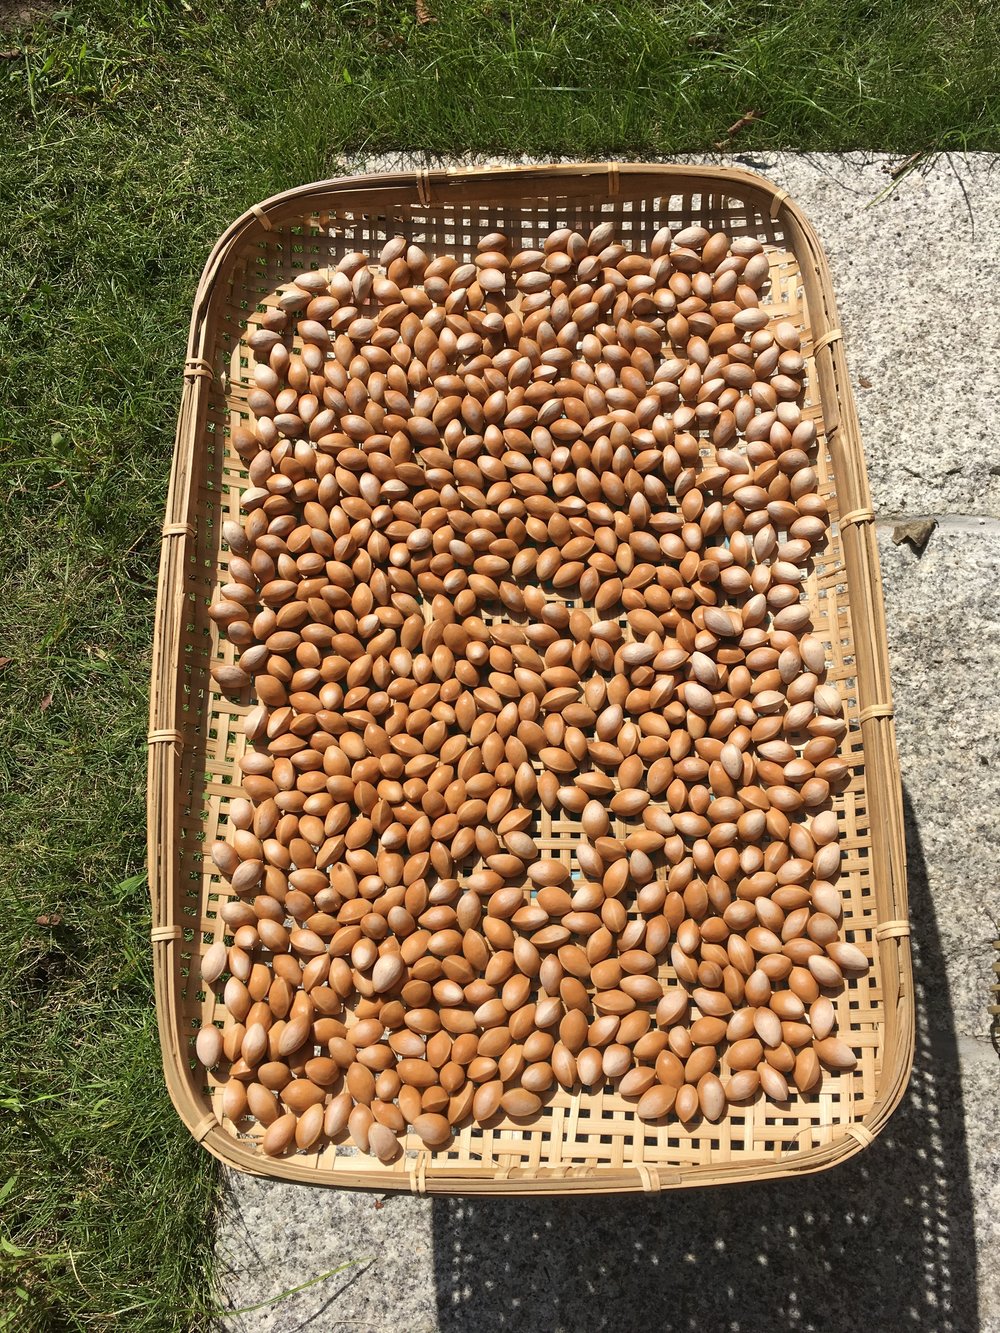  Gingko nuts drying in the sun 